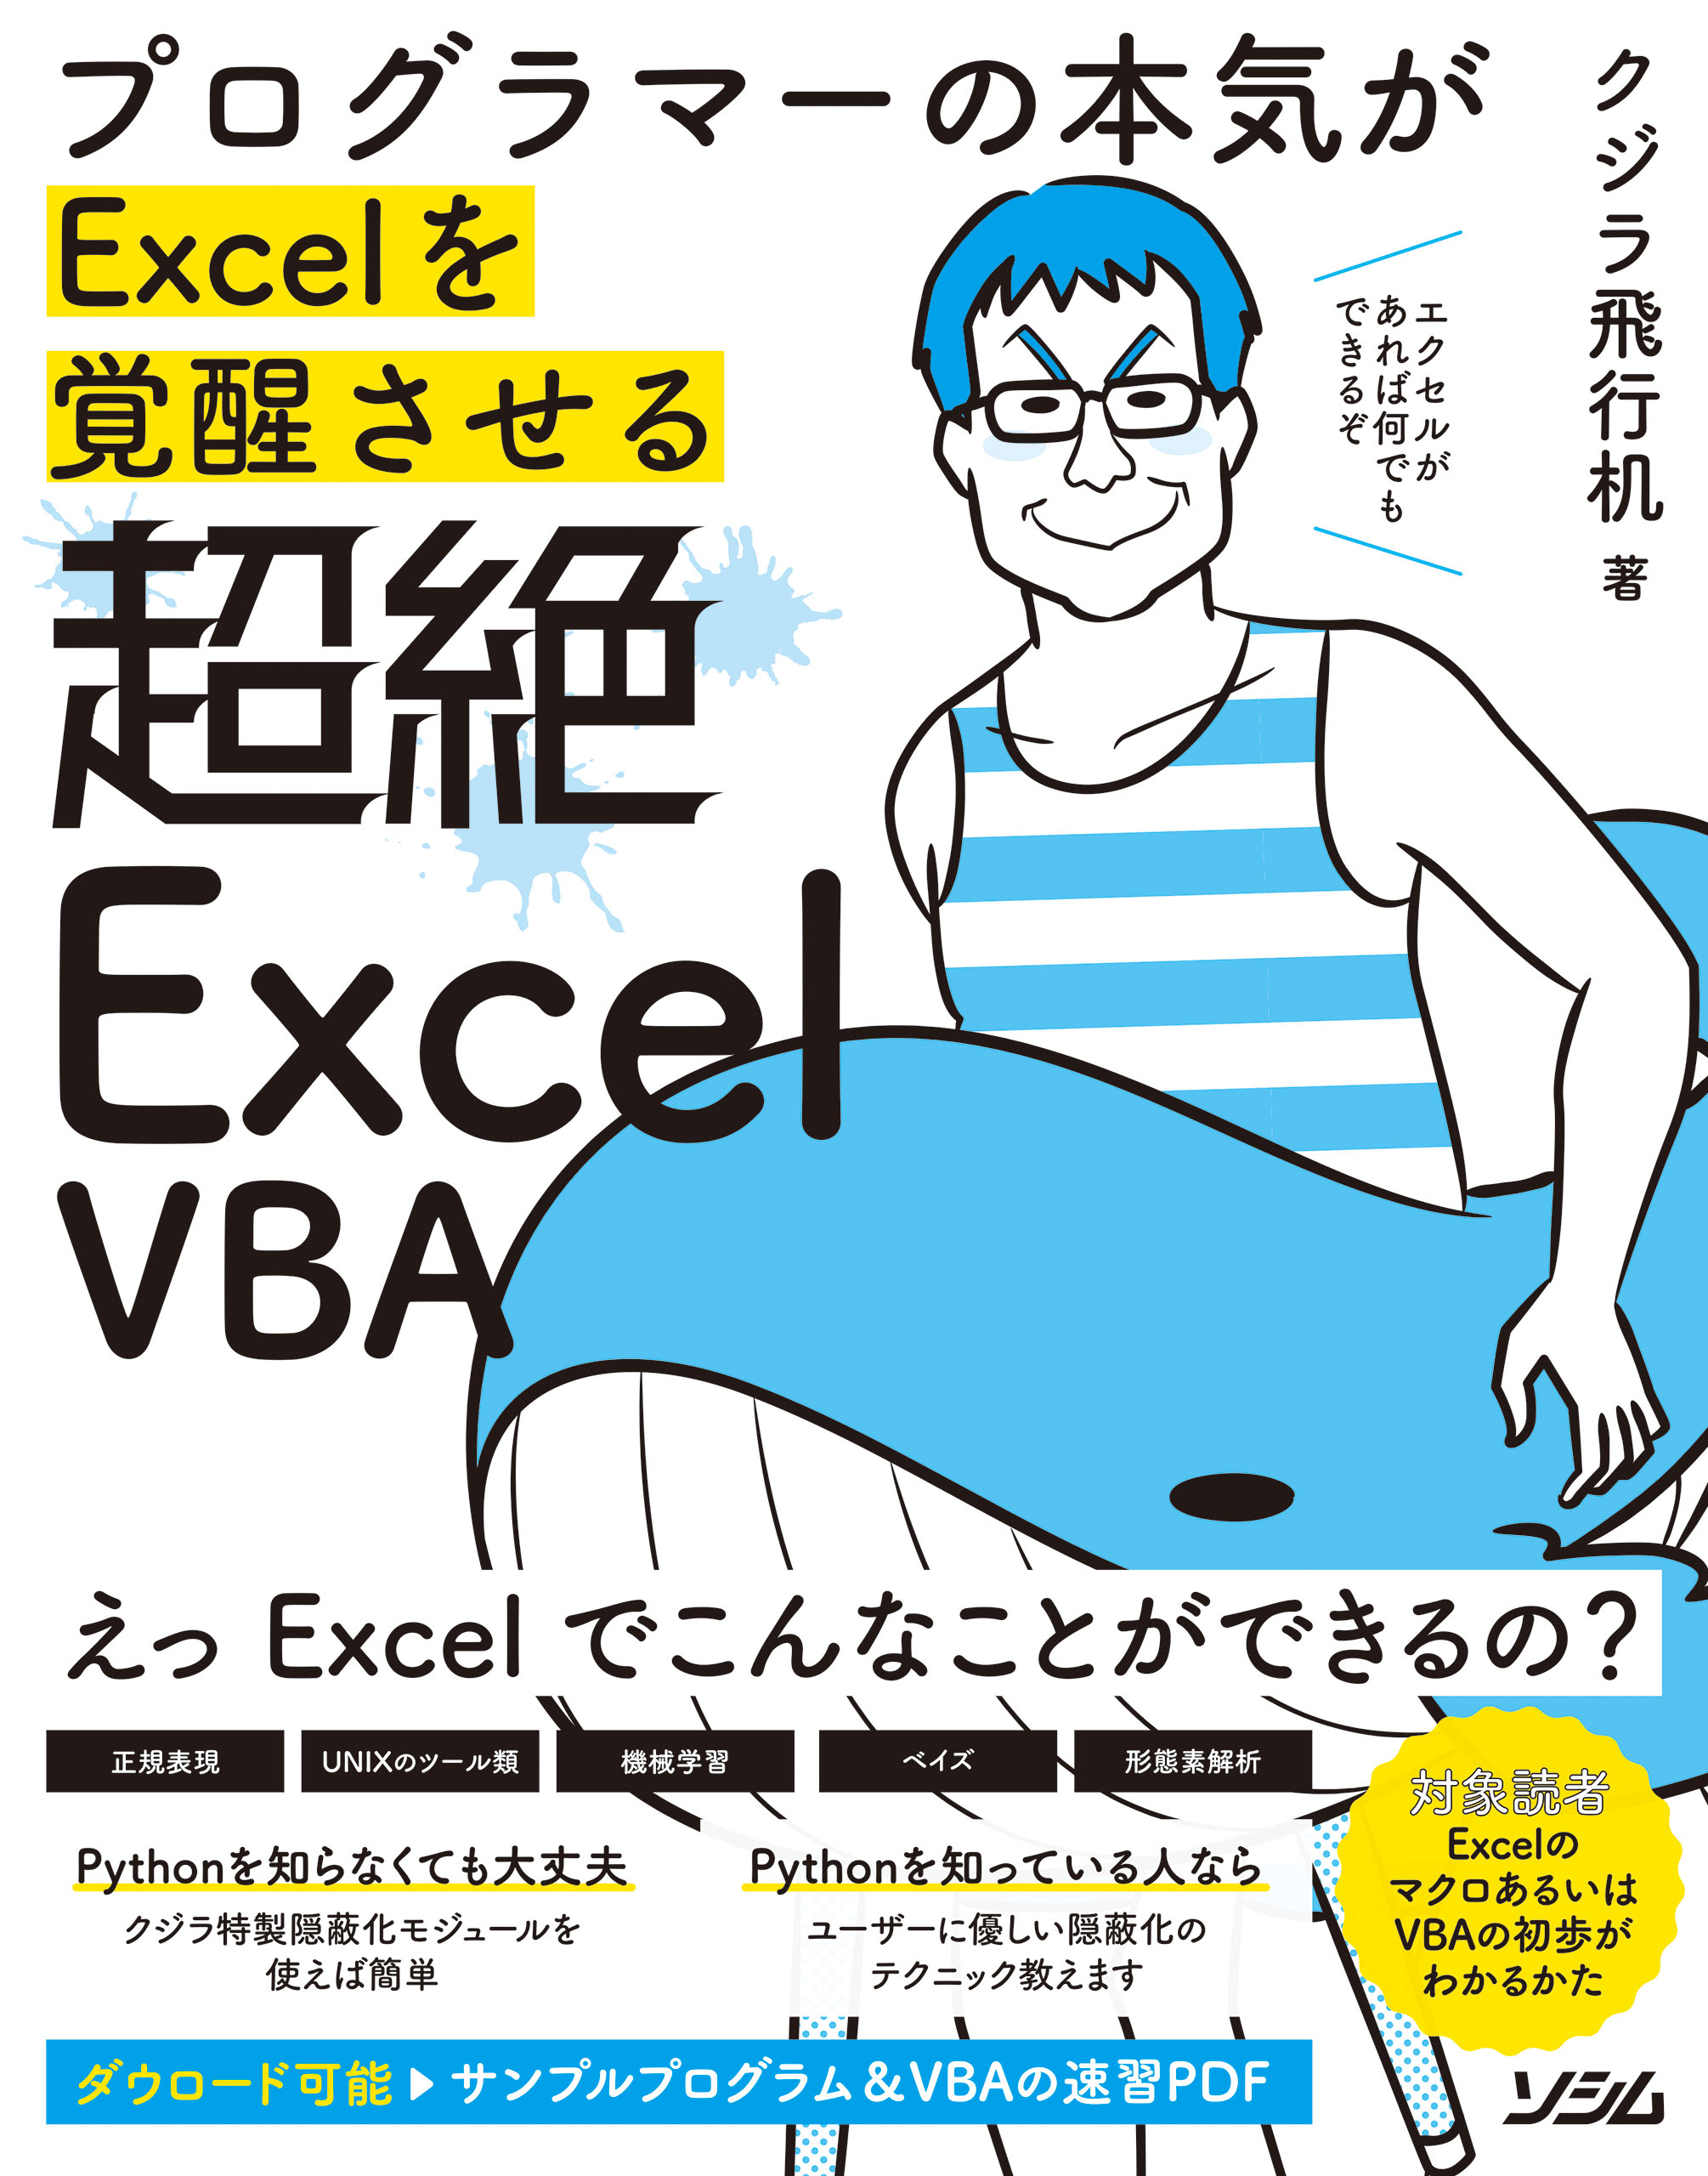 プログラマーの本気がExcelを覚醒させる 超絶Excel VBA(書籍) - 電子書籍 | U-NEXT 初回600円分無料